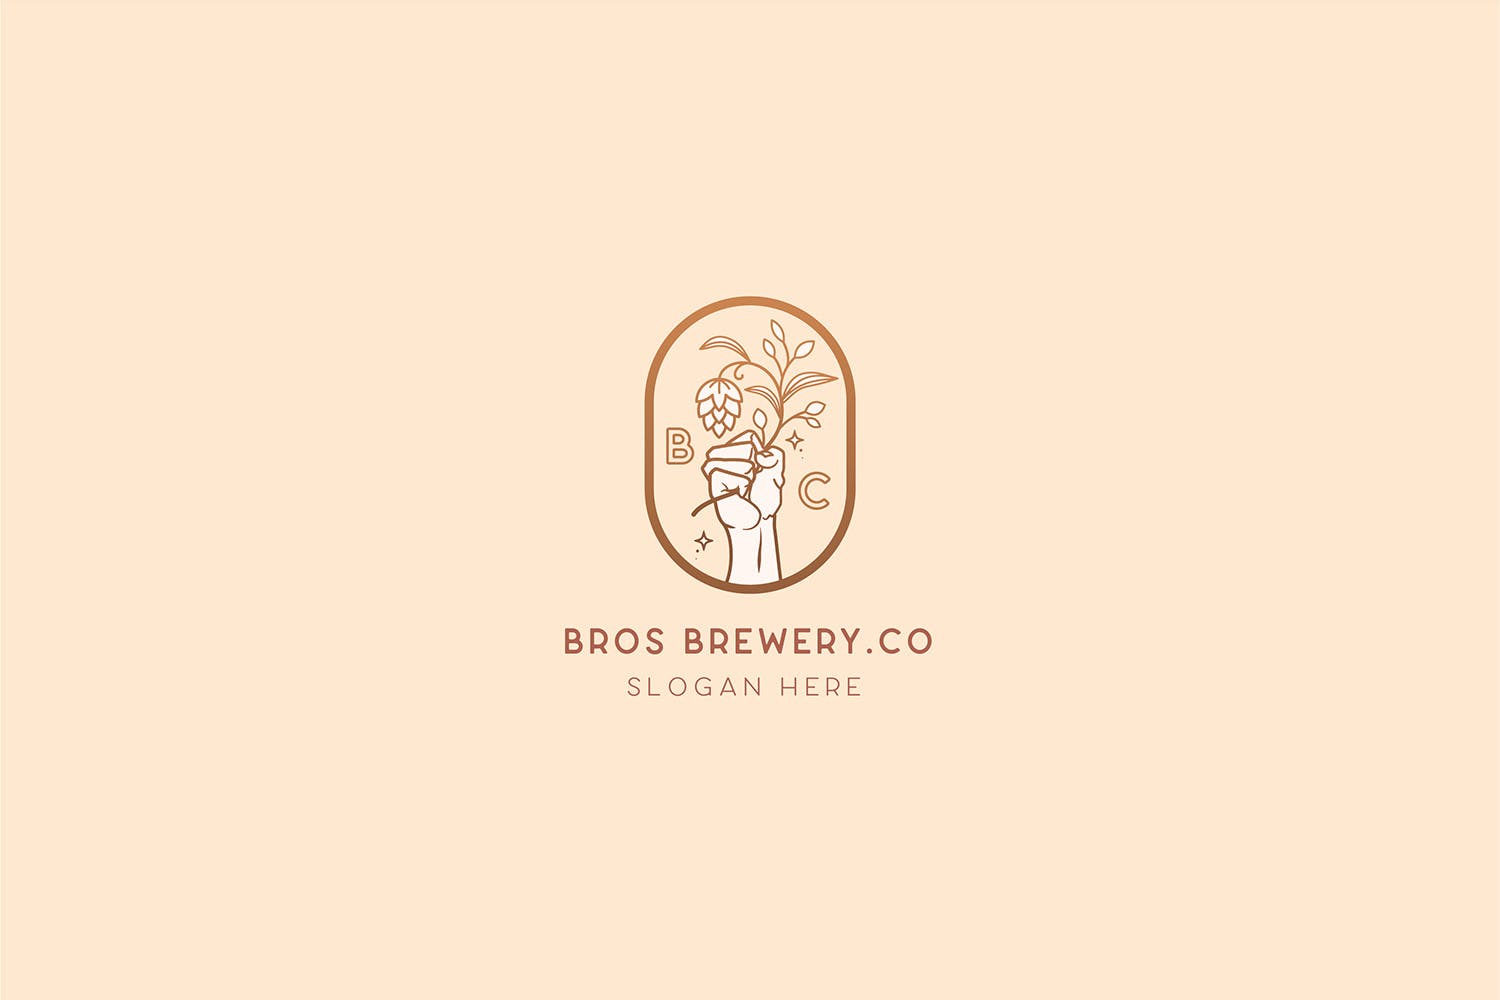 咖啡/啤酒品牌Logo设计16设计网精选模板 Brewery Brotherhood cafe beer Logo Template插图(2)